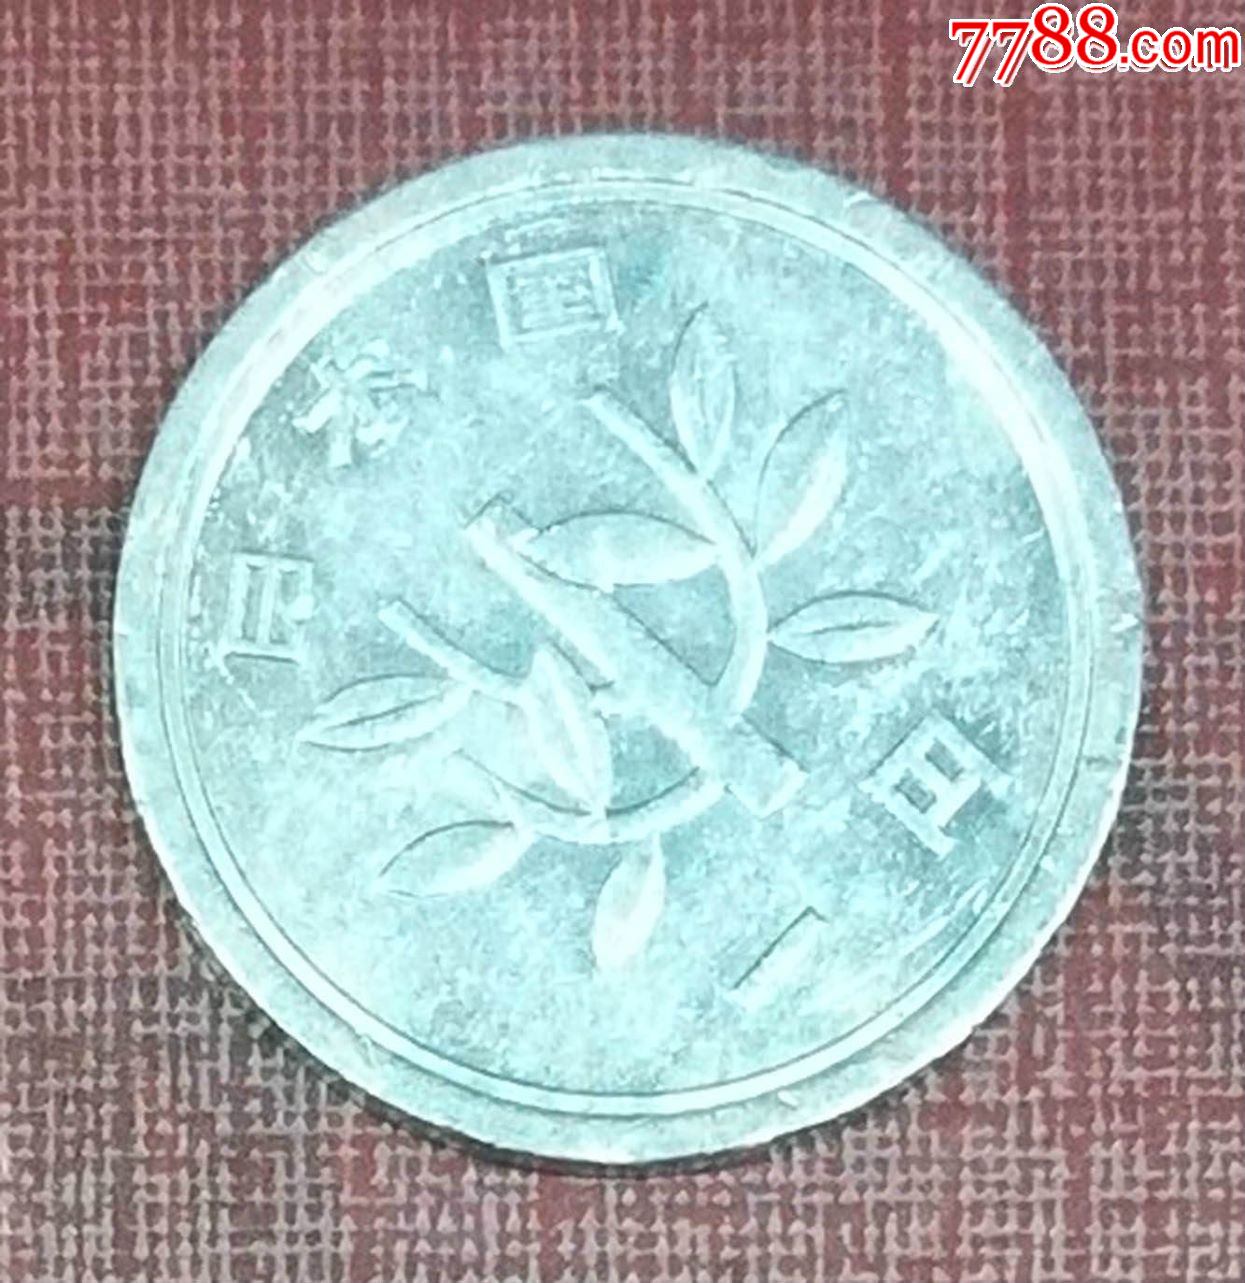 日本1元硬币